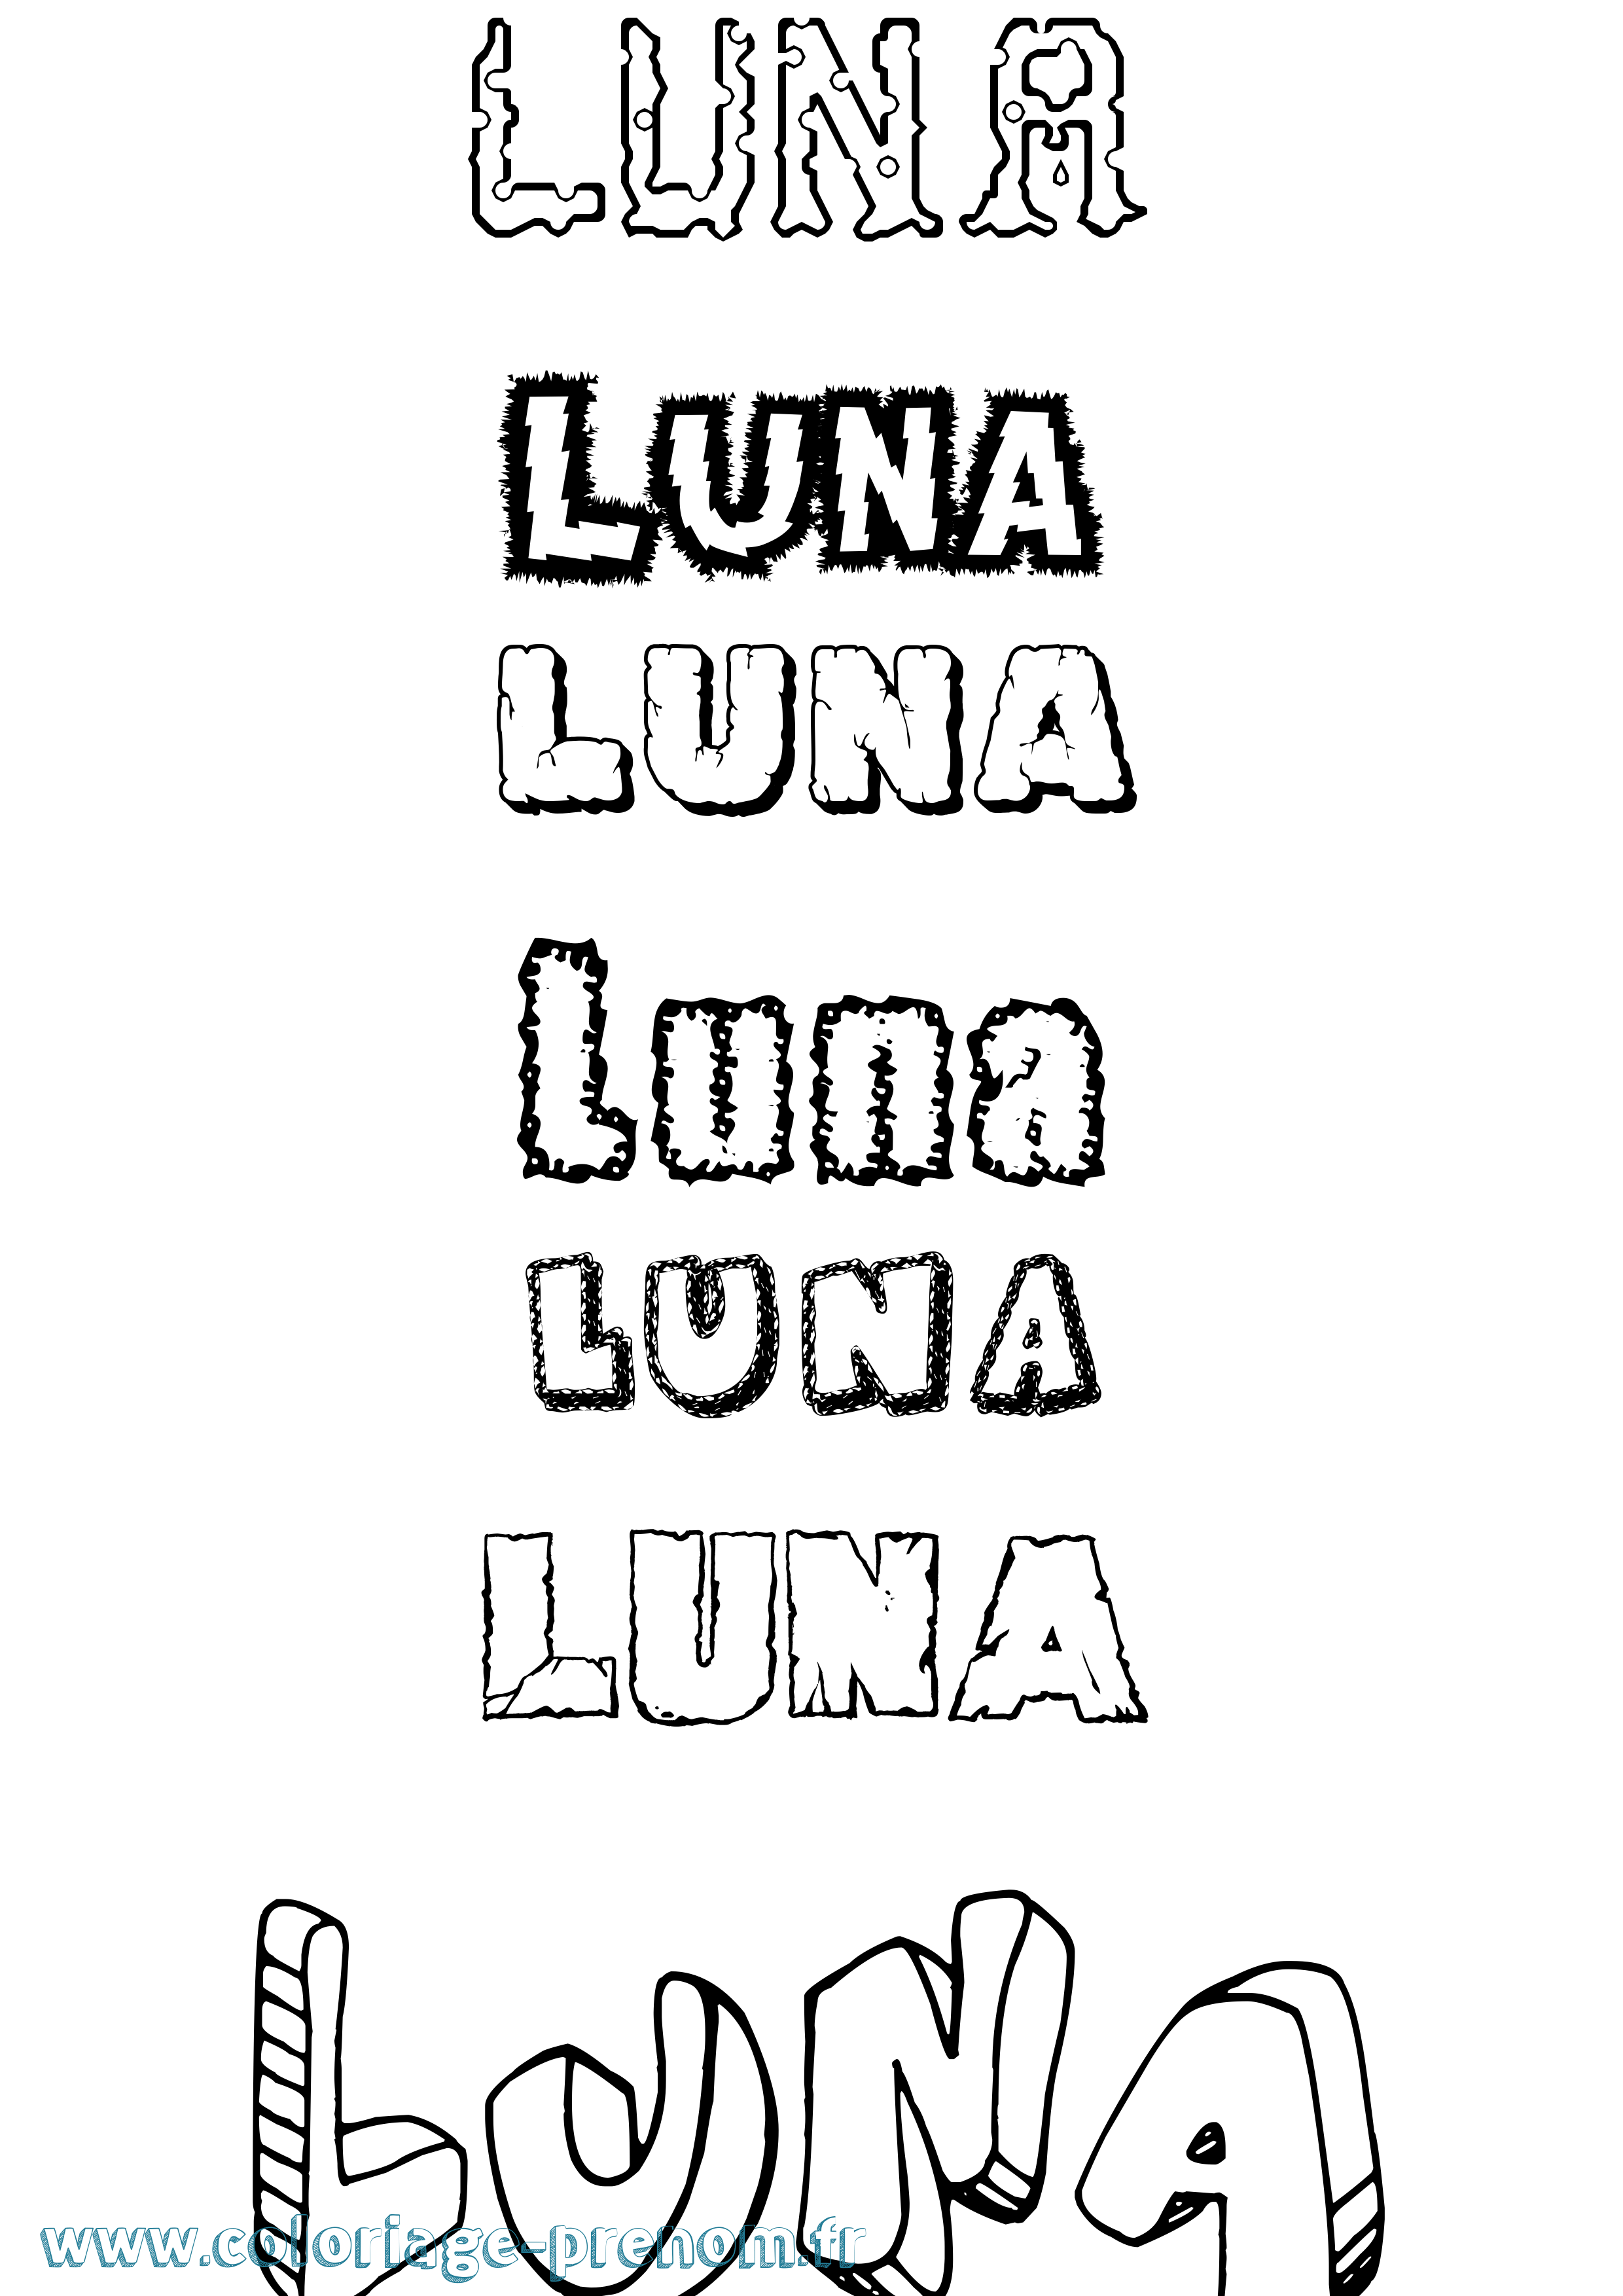 Coloriage prénom Luna